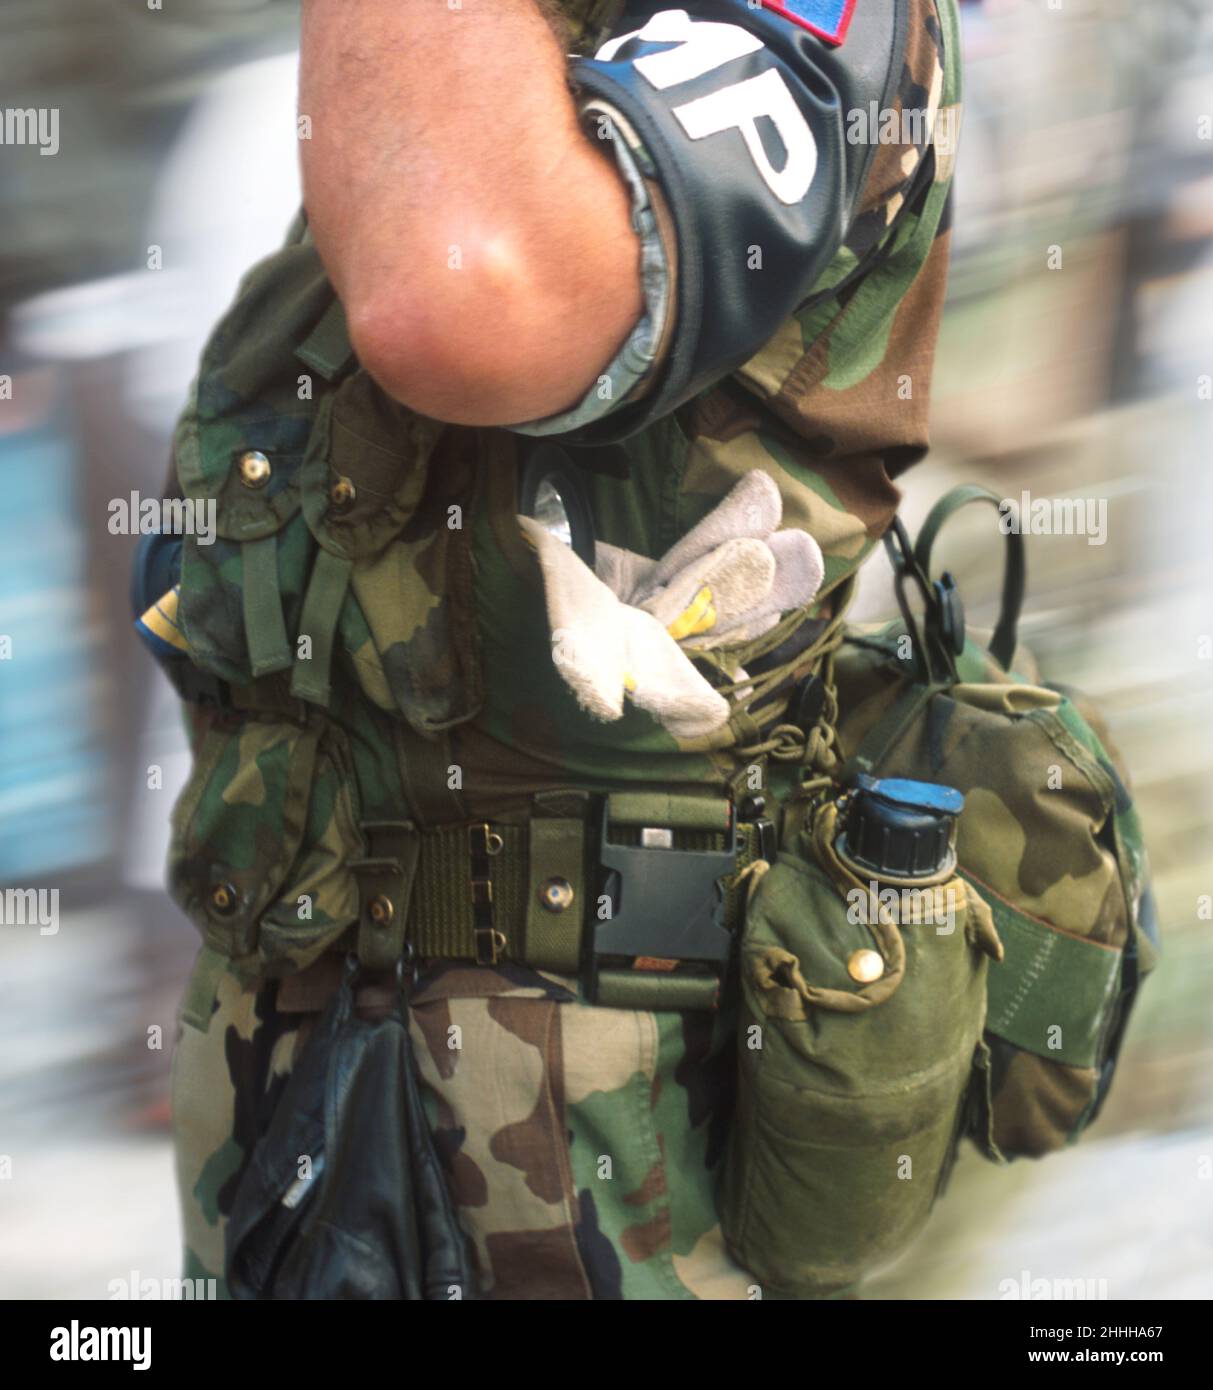 MP salutiert. MP National Guard US Army Militärpolizei Armband. Soldat steht vor der Tür, Kampfbereitschaft und Dienst in Tarnkleidung. Stockfoto